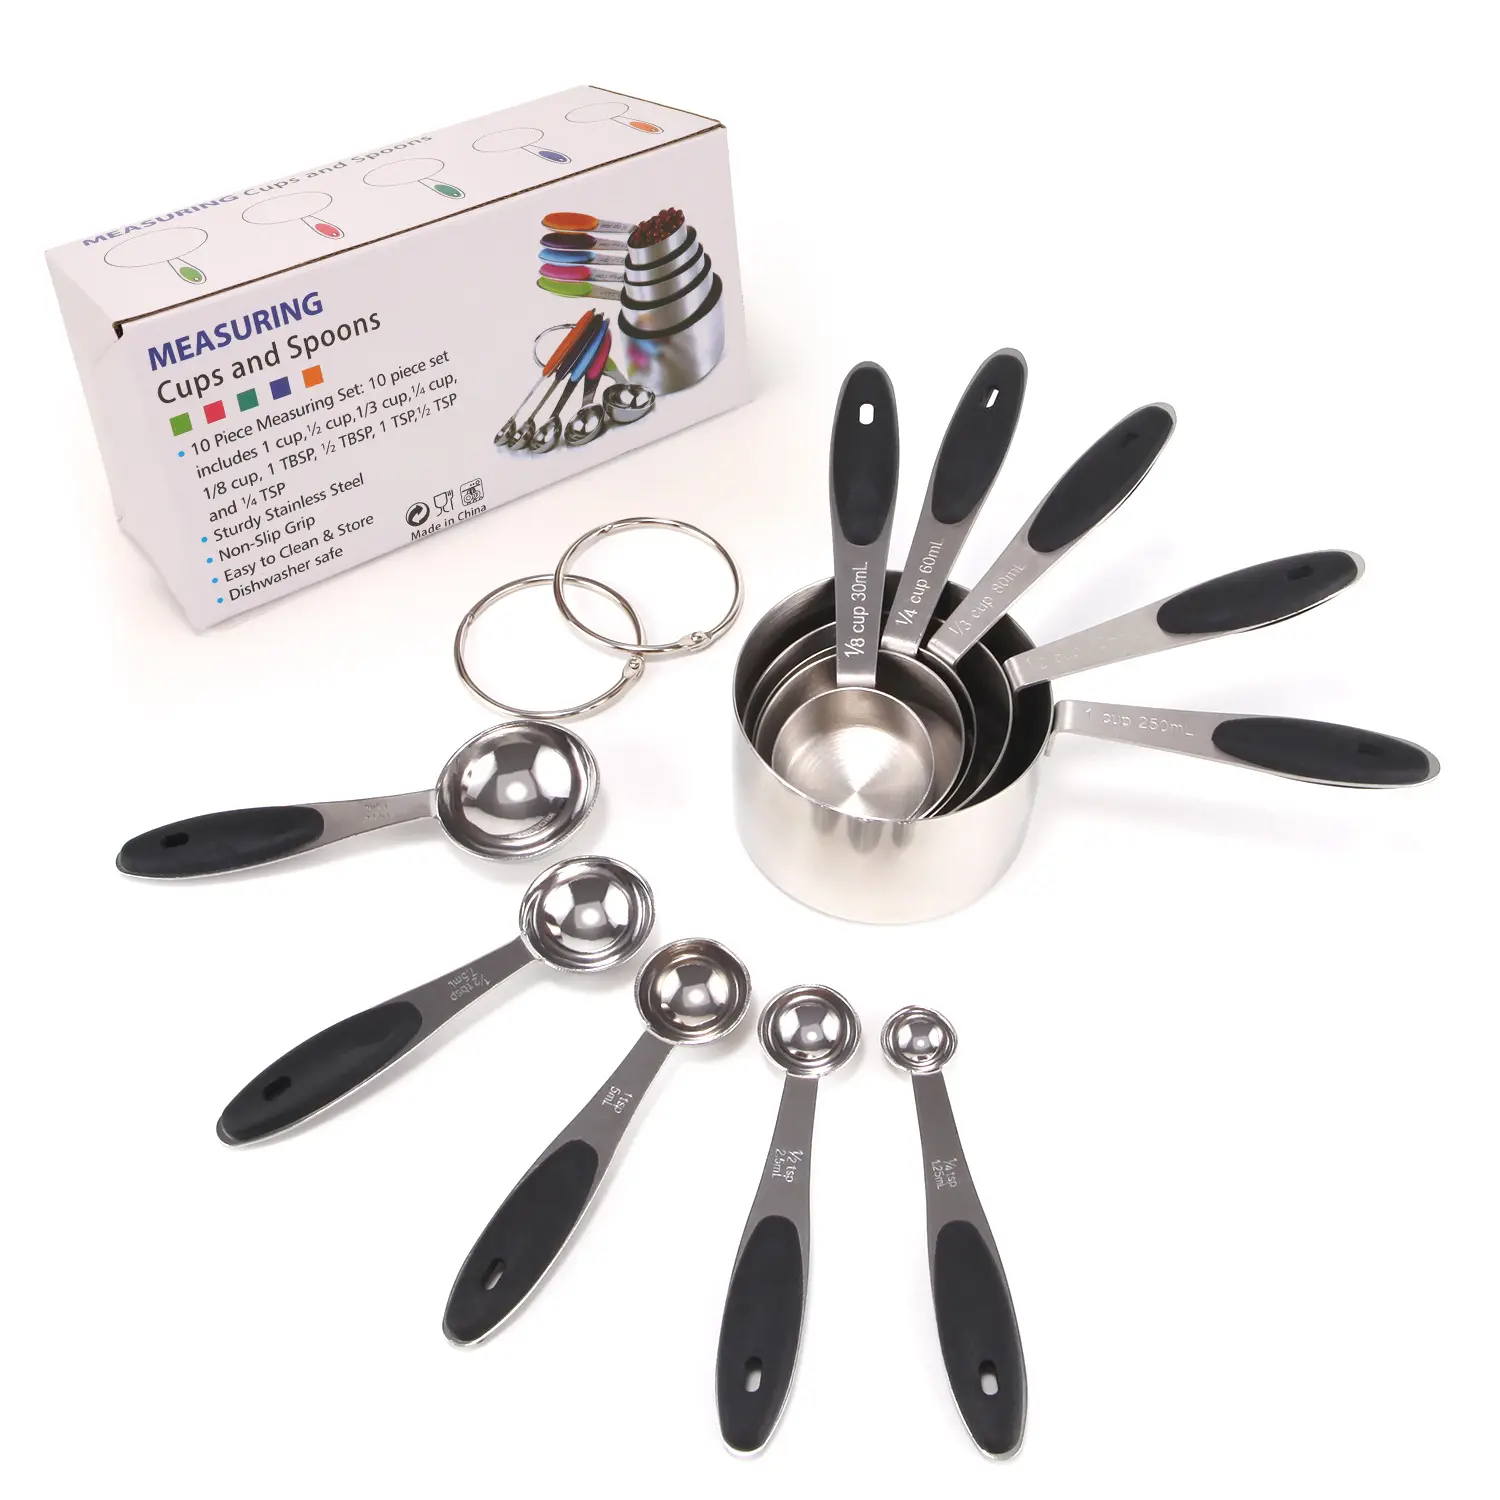 Mutfak pişirme araçları kaşık ölçümleri 10 adet paslanmaz çelik bardak ölçme ve hediye kuru sıvı maddeler için kaşık seti